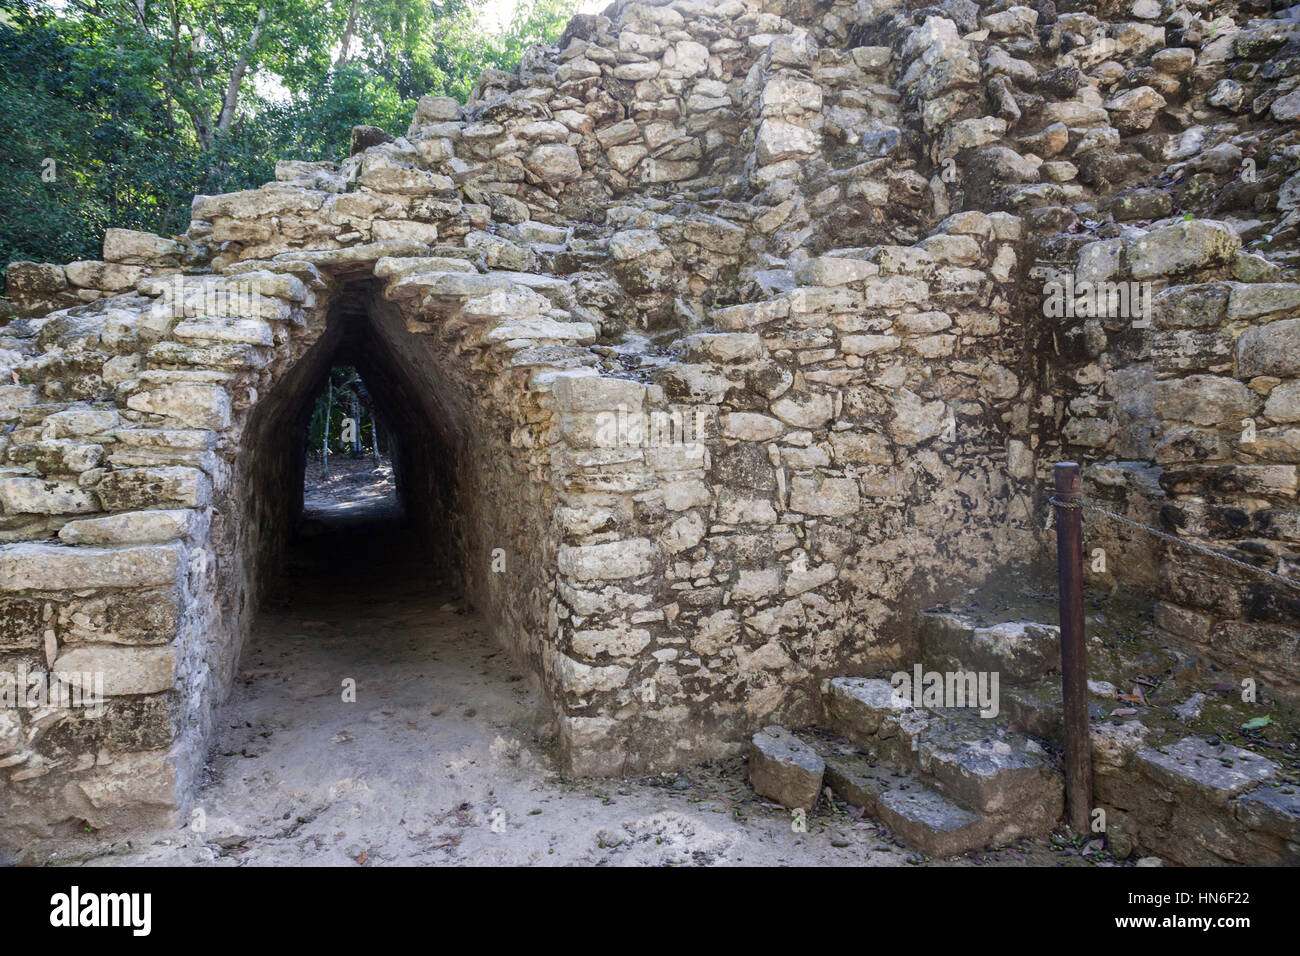 Corbelled arch passageway at Coba Mayan ruins. An Ancient Mayan Civilization. Yucatan Peninsula, Mexican state of Quintana Roo, Mexico Stock Photo